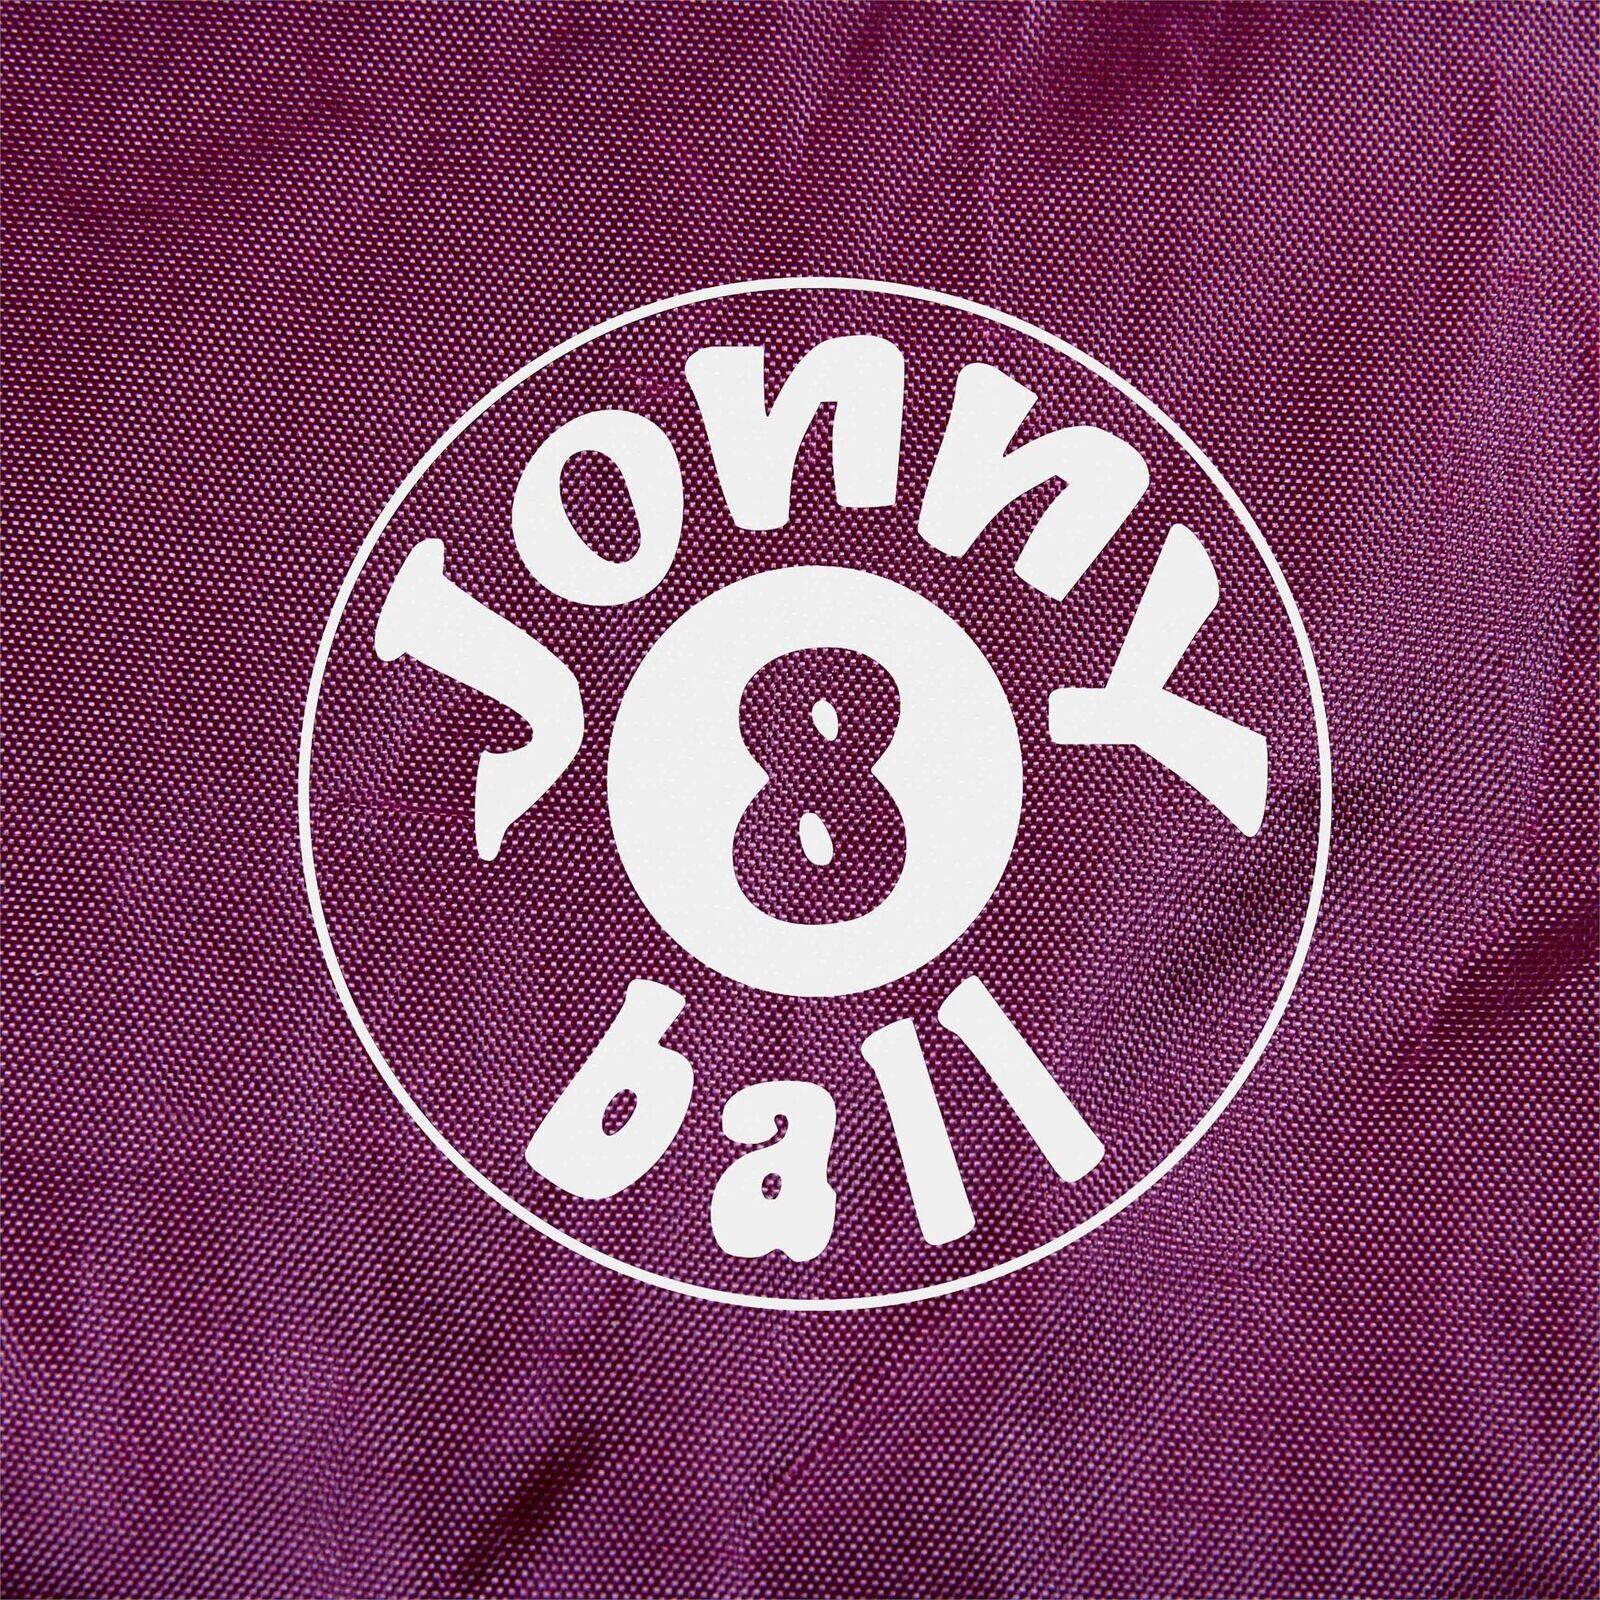 Jonny 8 Ball 7ft Fitted Nylon Snooker Pool Table Cover - BURGUNDY - 215 x 125CM 3/3